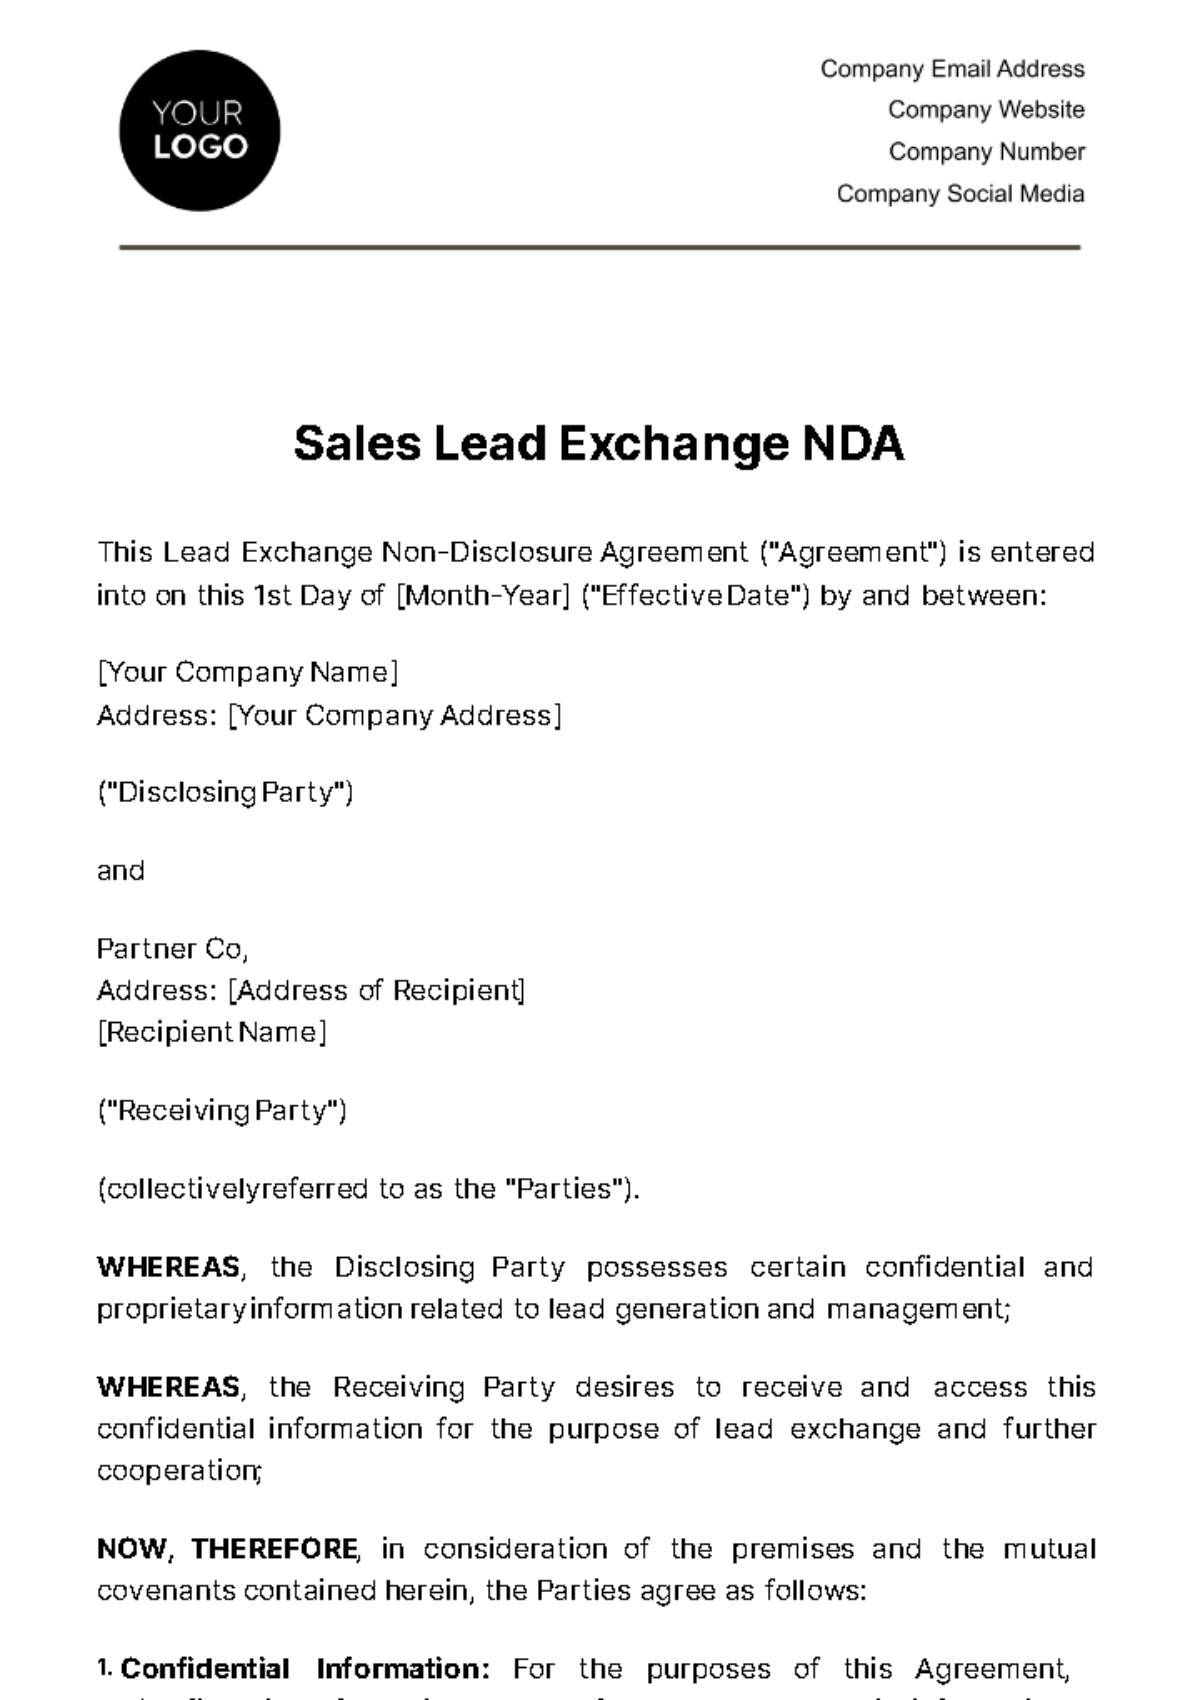 Sales Lead Exchange NDA Template